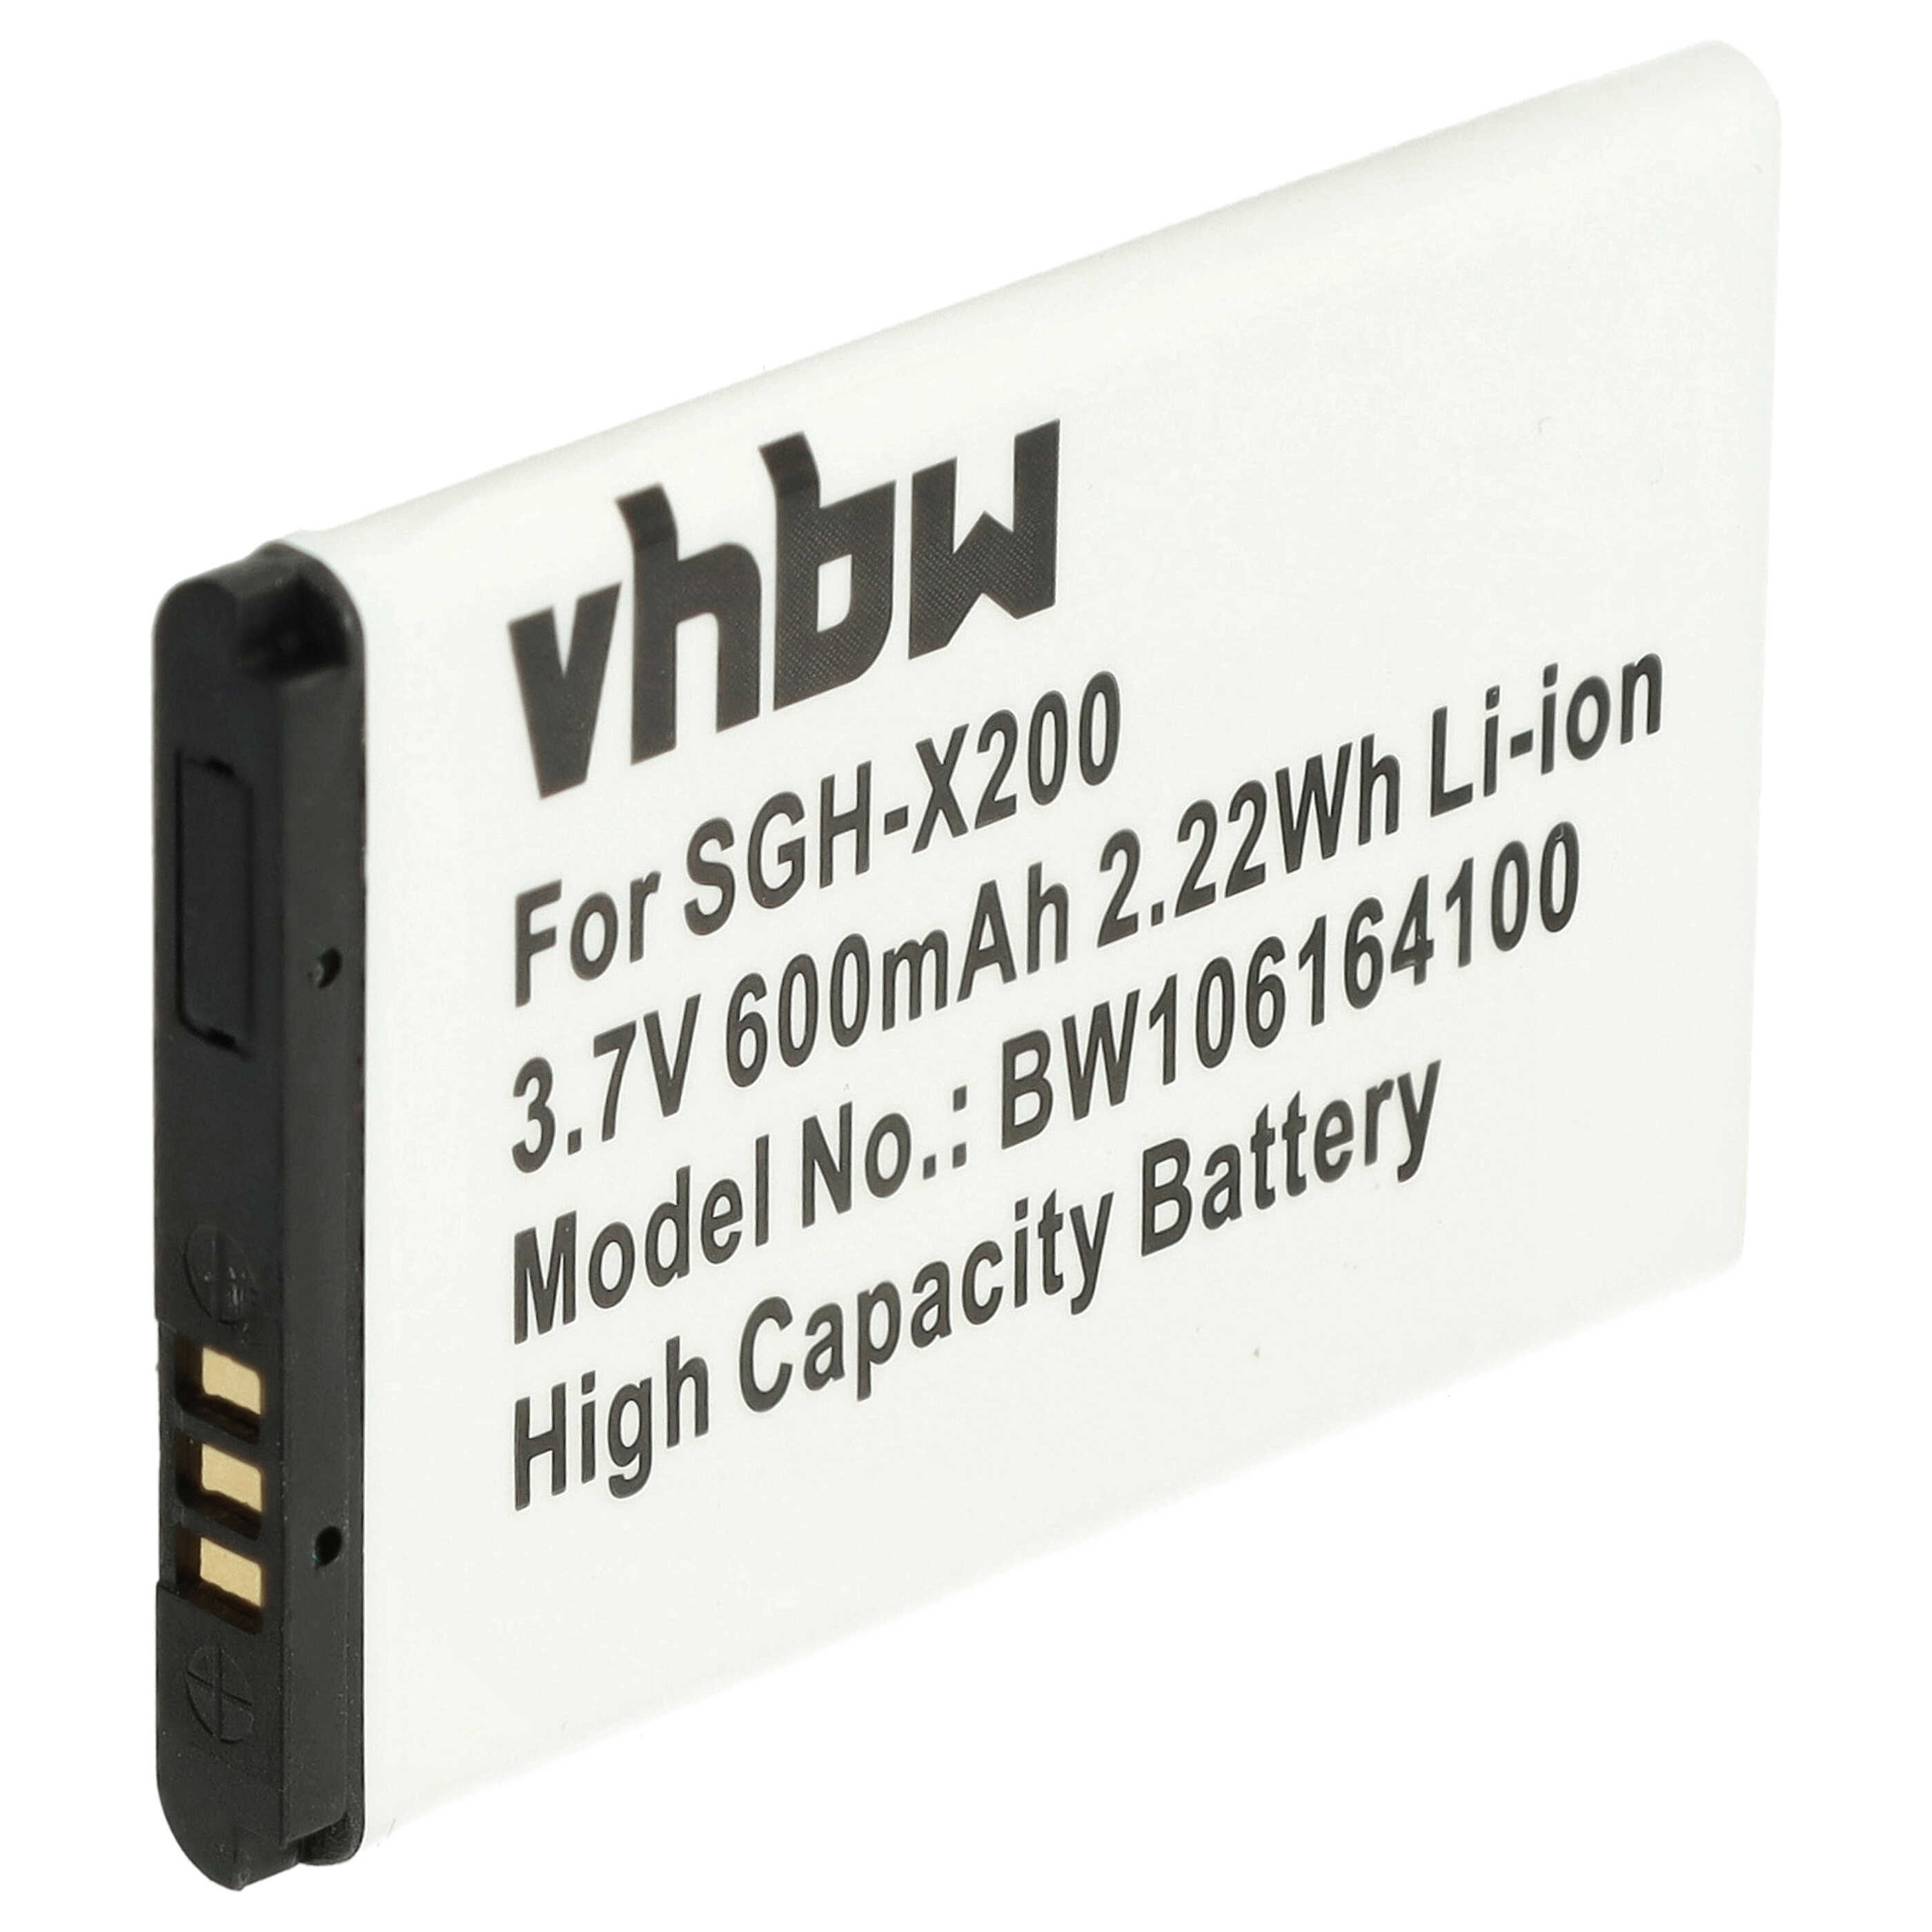 Akumulator bateria do telefonu smartfona zam. Samsung AB043446BC, AB043446BE - 600mAh, 3,7V, Li-Ion